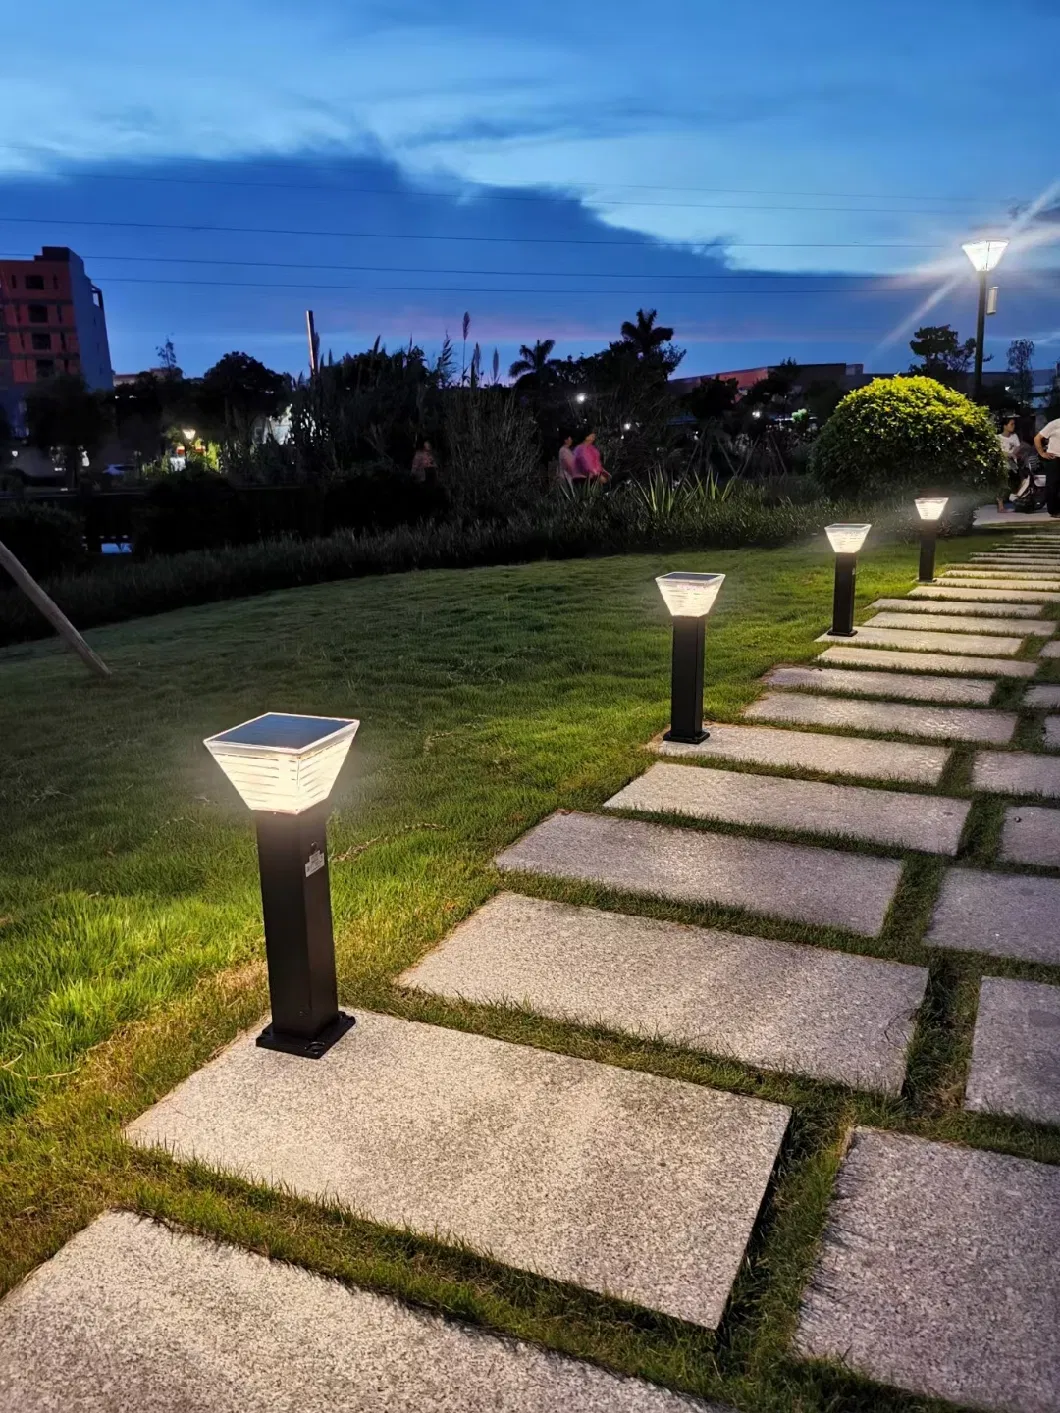 New LED Warm White Garden Solar Spot Light Pathway Landscape Outdoor Light